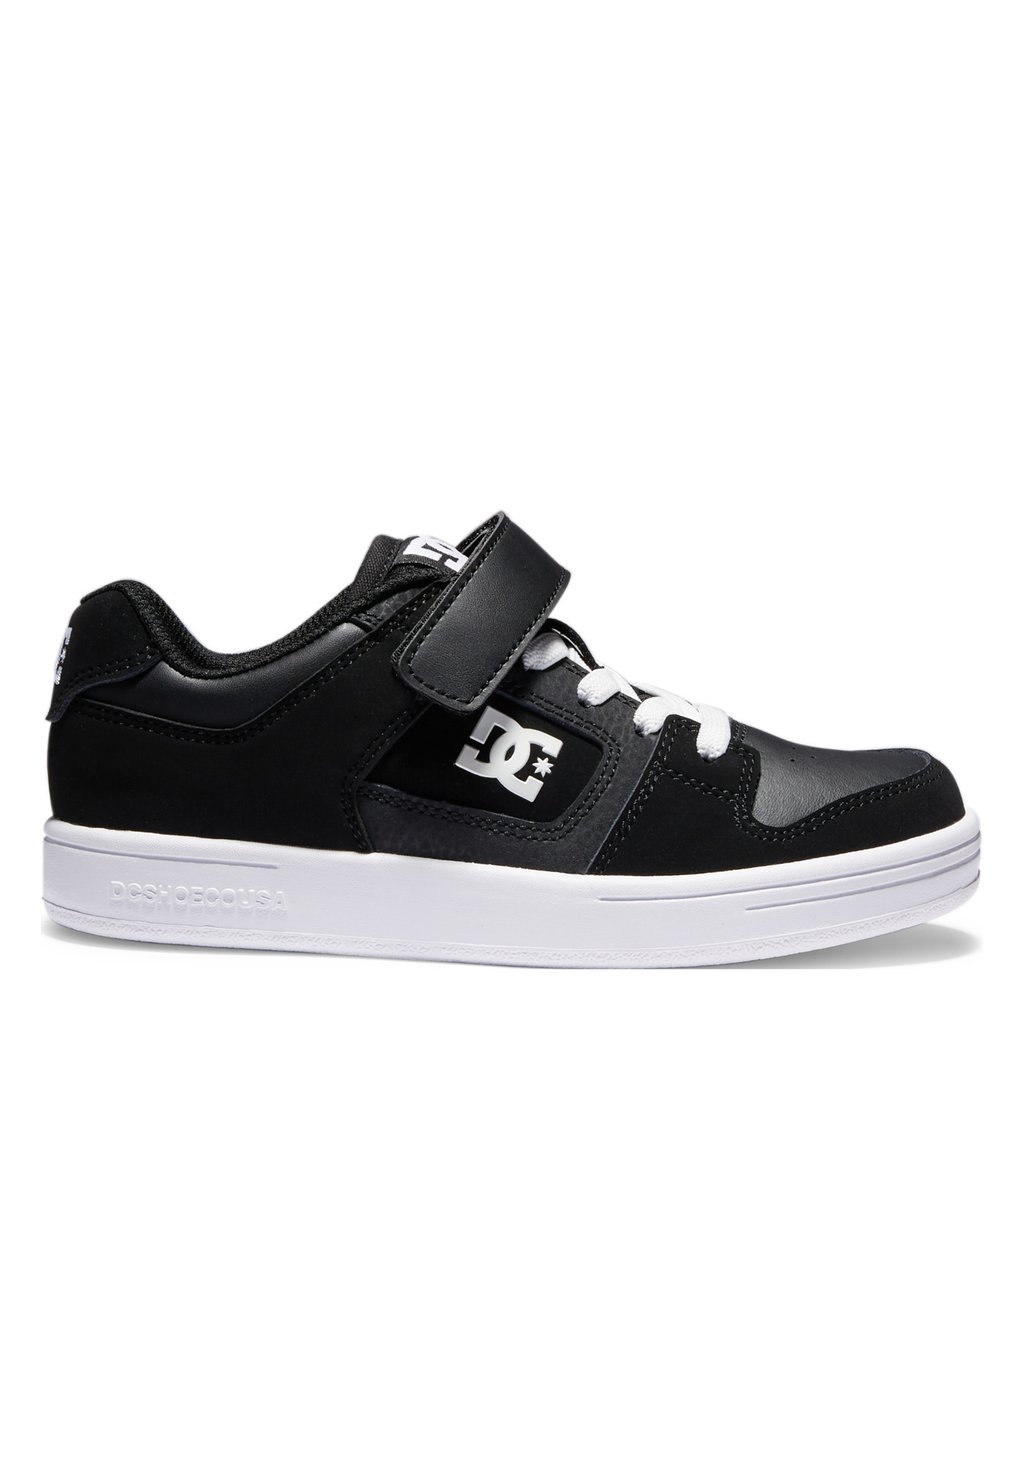 Низкие кроссовки Manteca 4 V DC Shoes, цвет black black white низкие кеды dc shoes цвет bdm black denim